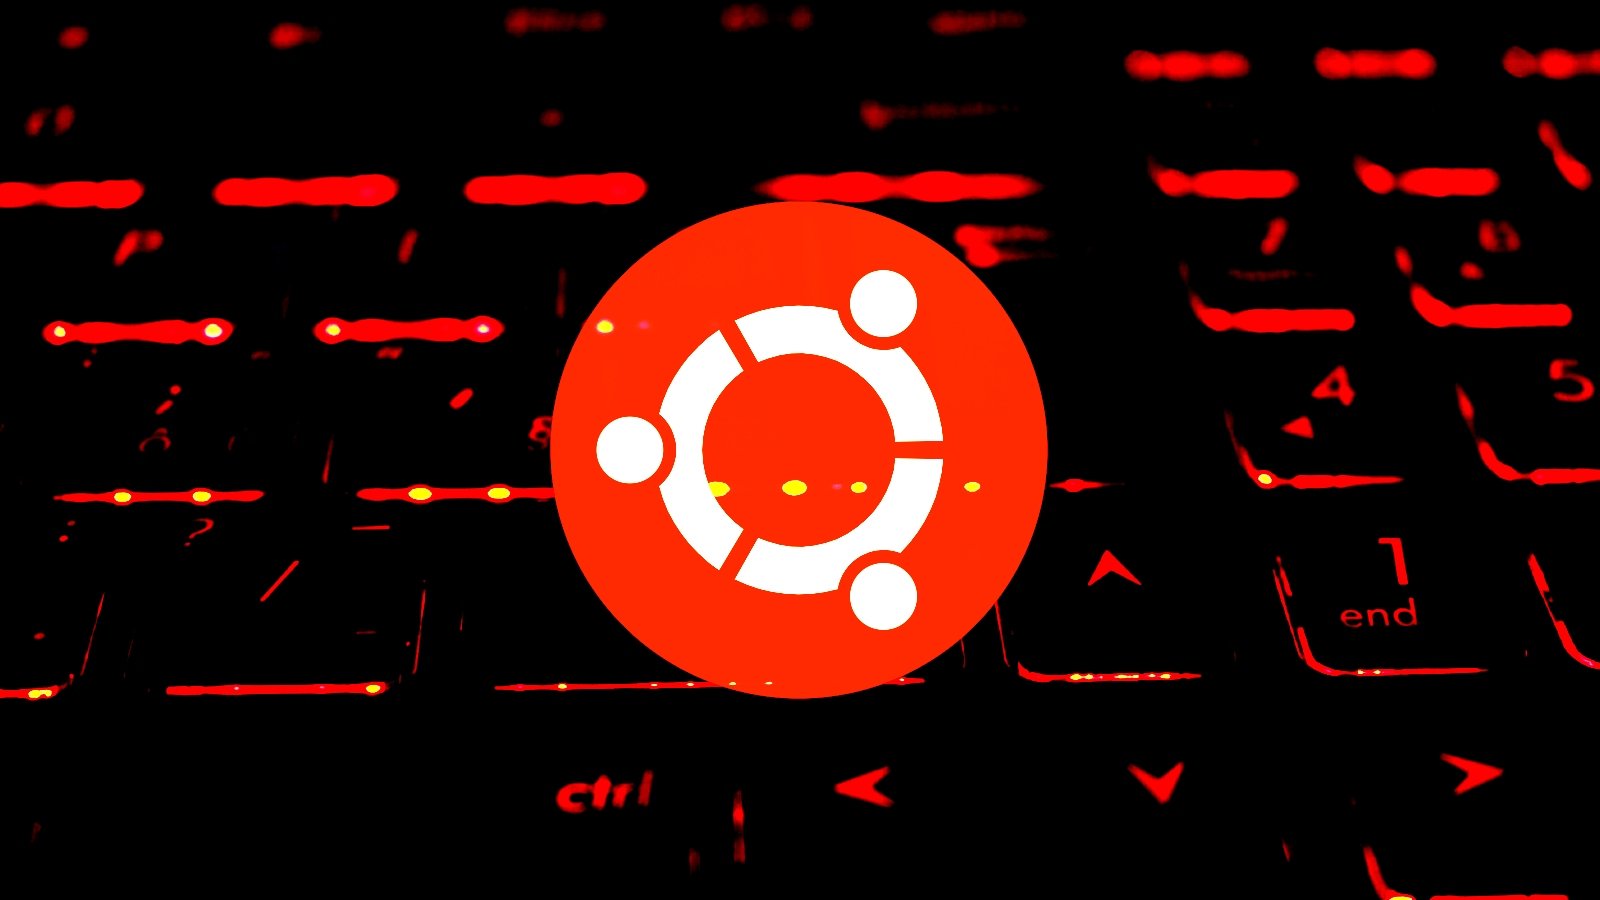 在发现23.10版本中存在“仇恨言论”后，Ubuntu关闭了23.10版本
